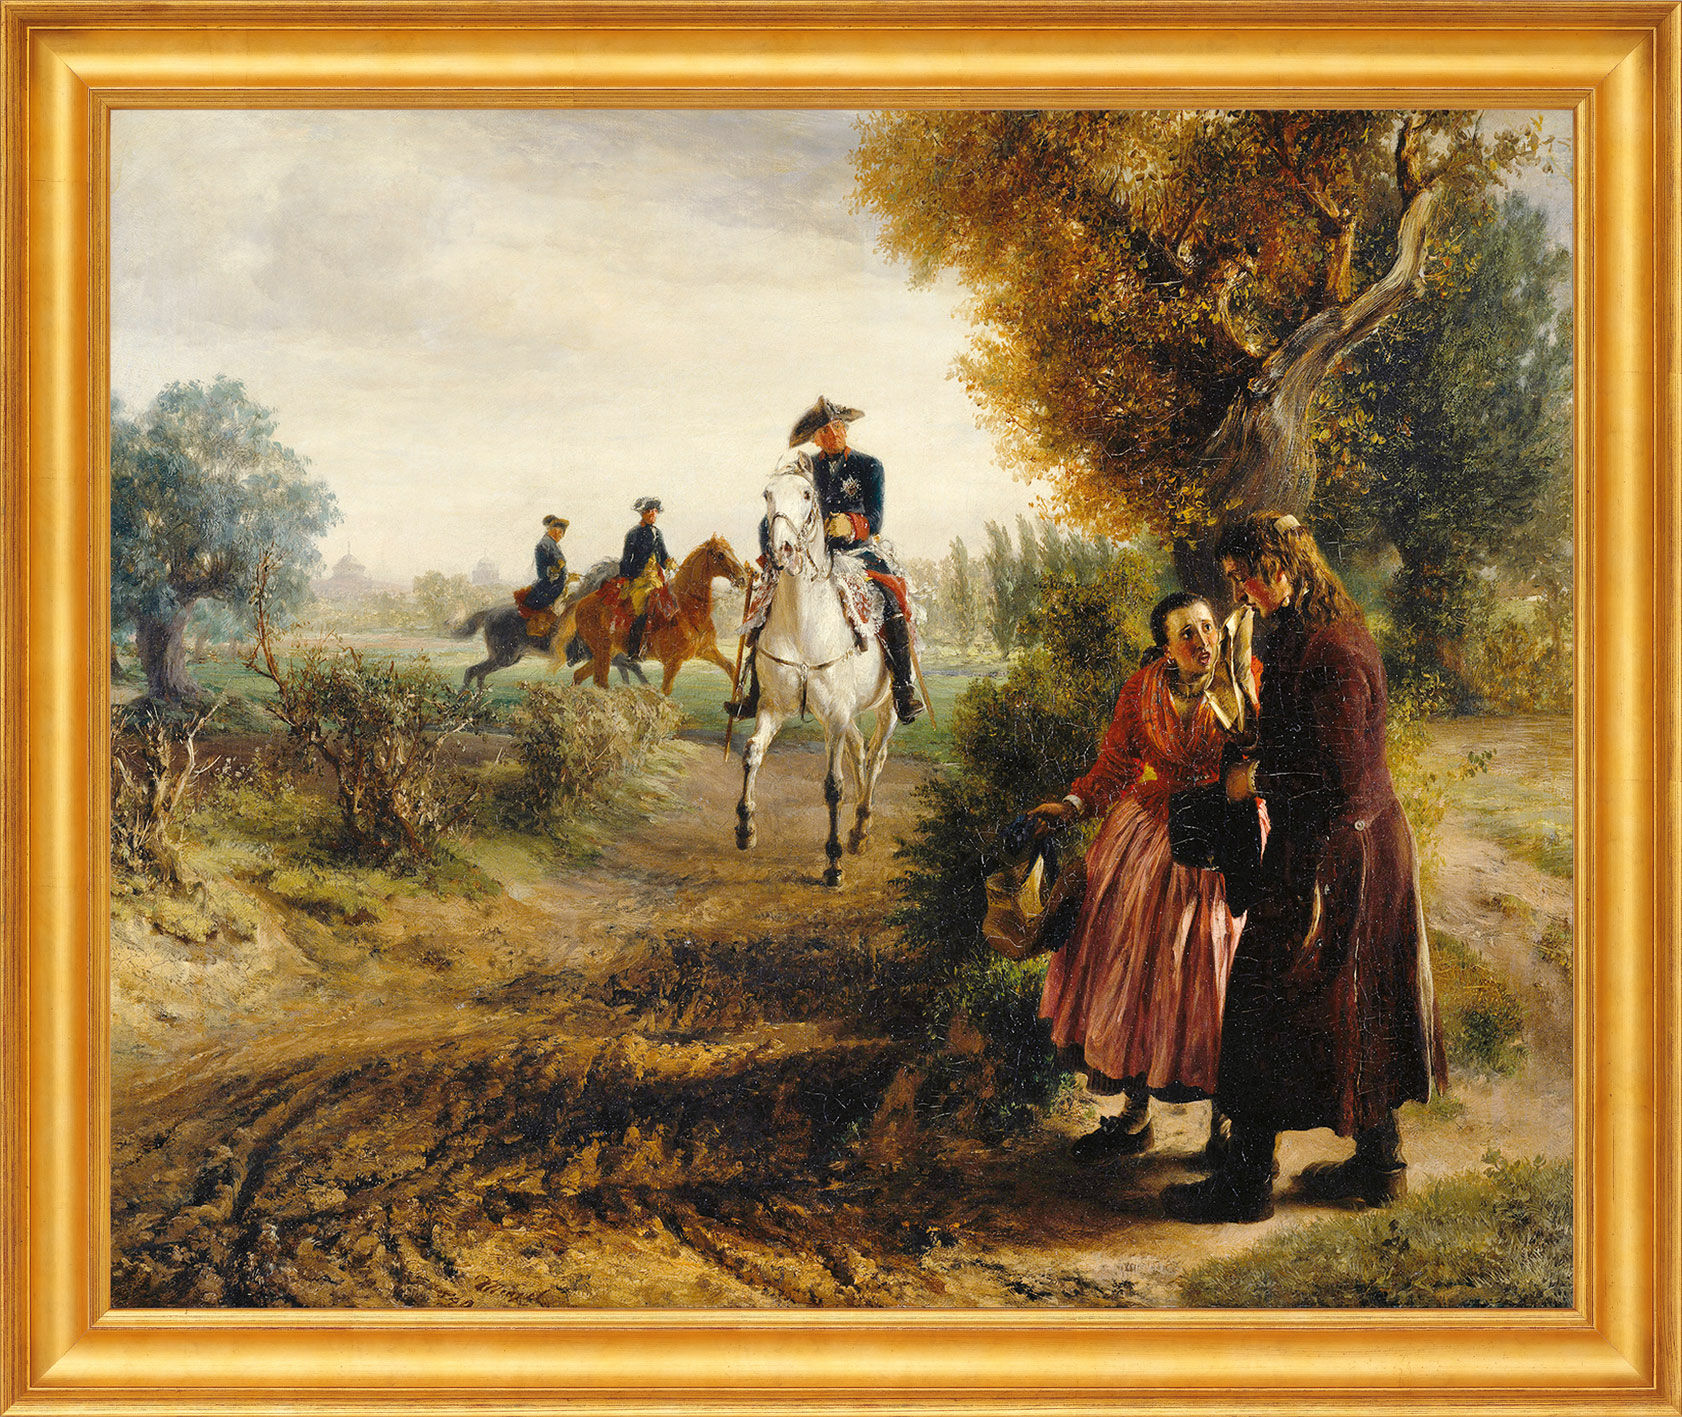 Tableau "La Pétition (La Chevauchée)" (1849), encadré von Adolph von Menzel